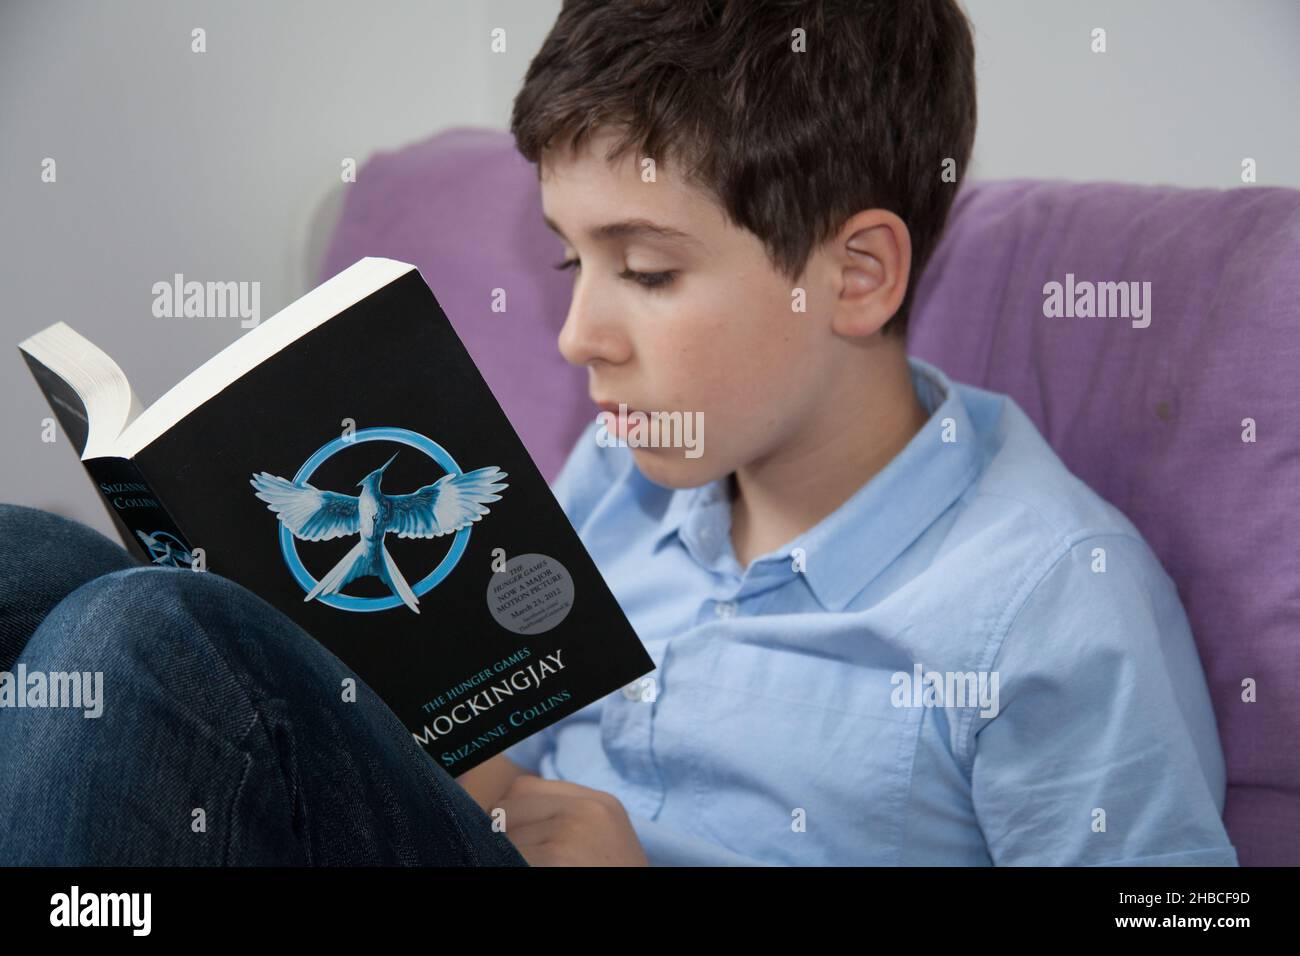 Un niño se sentó en una cómoda silla leyendo el Mockingjay de los juegos de Hambre de Suzanne Collins Foto de stock